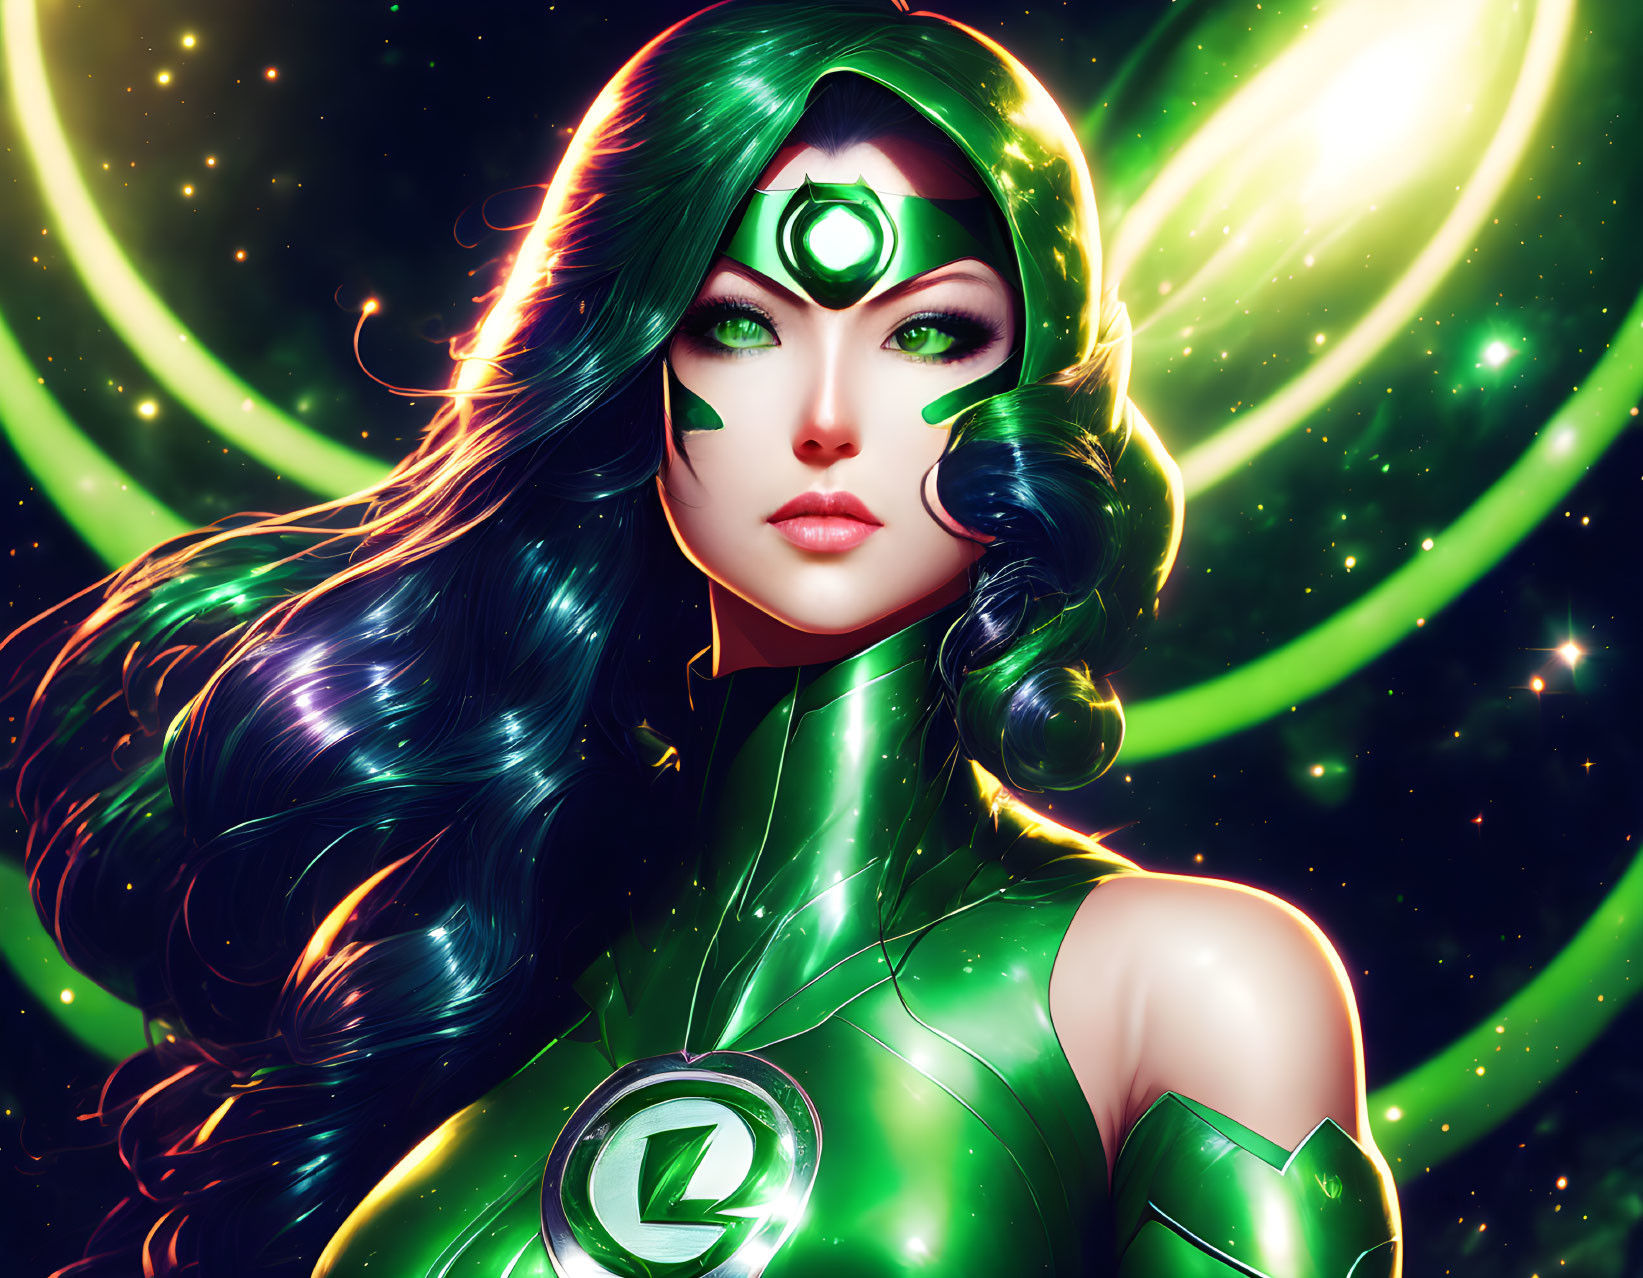 A Famous Anime Green Lantern Woman by DC